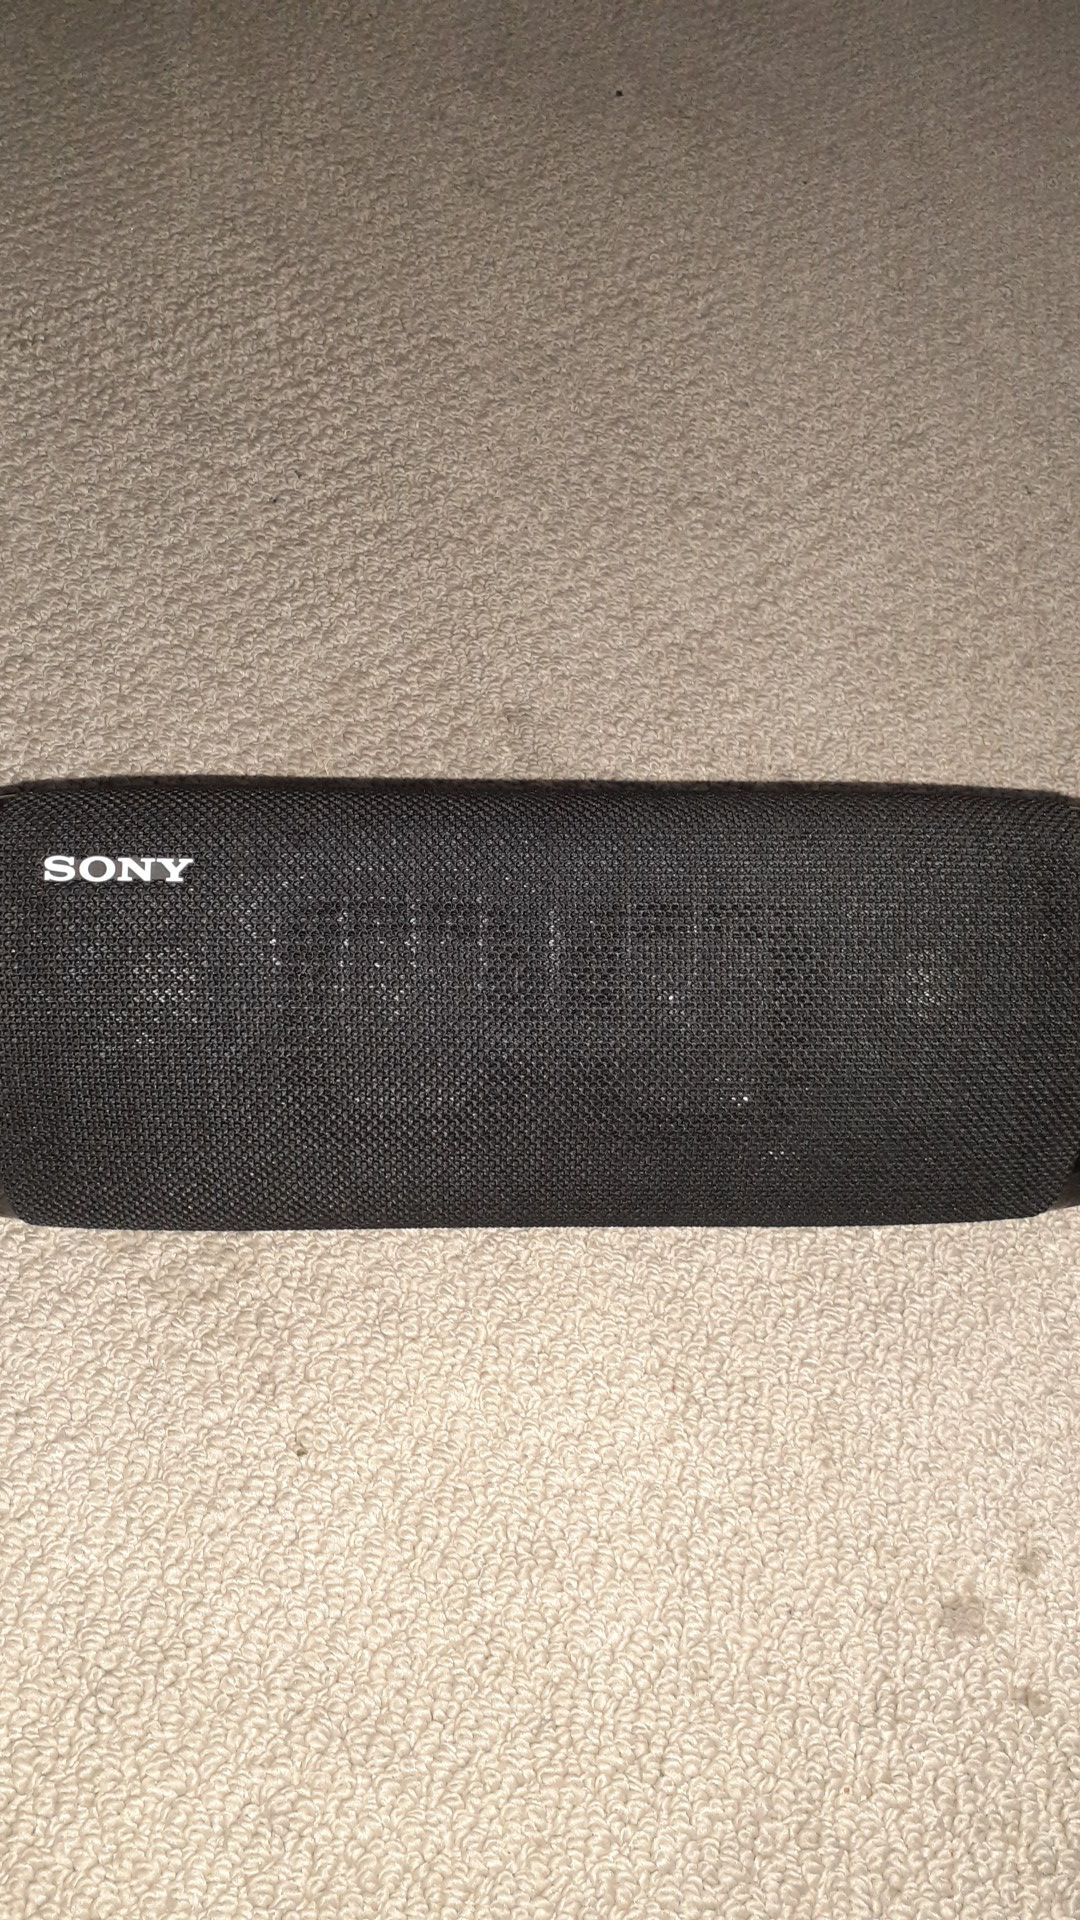 Sony speakers xb43